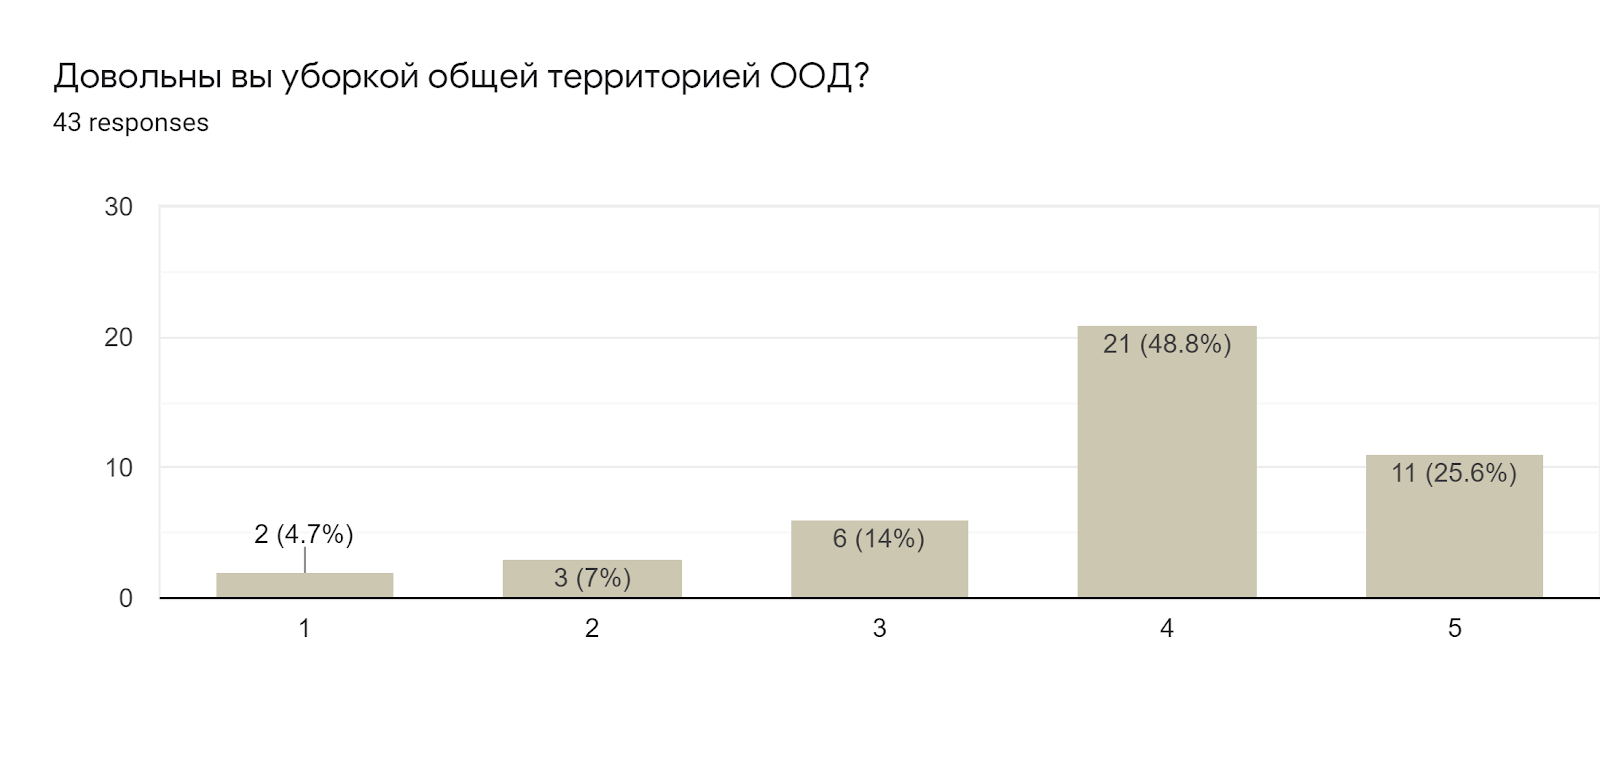 Forms response chart. Question title: Довольны вы уборкой общей территорией ООД?. Number of responses: 43 responses.